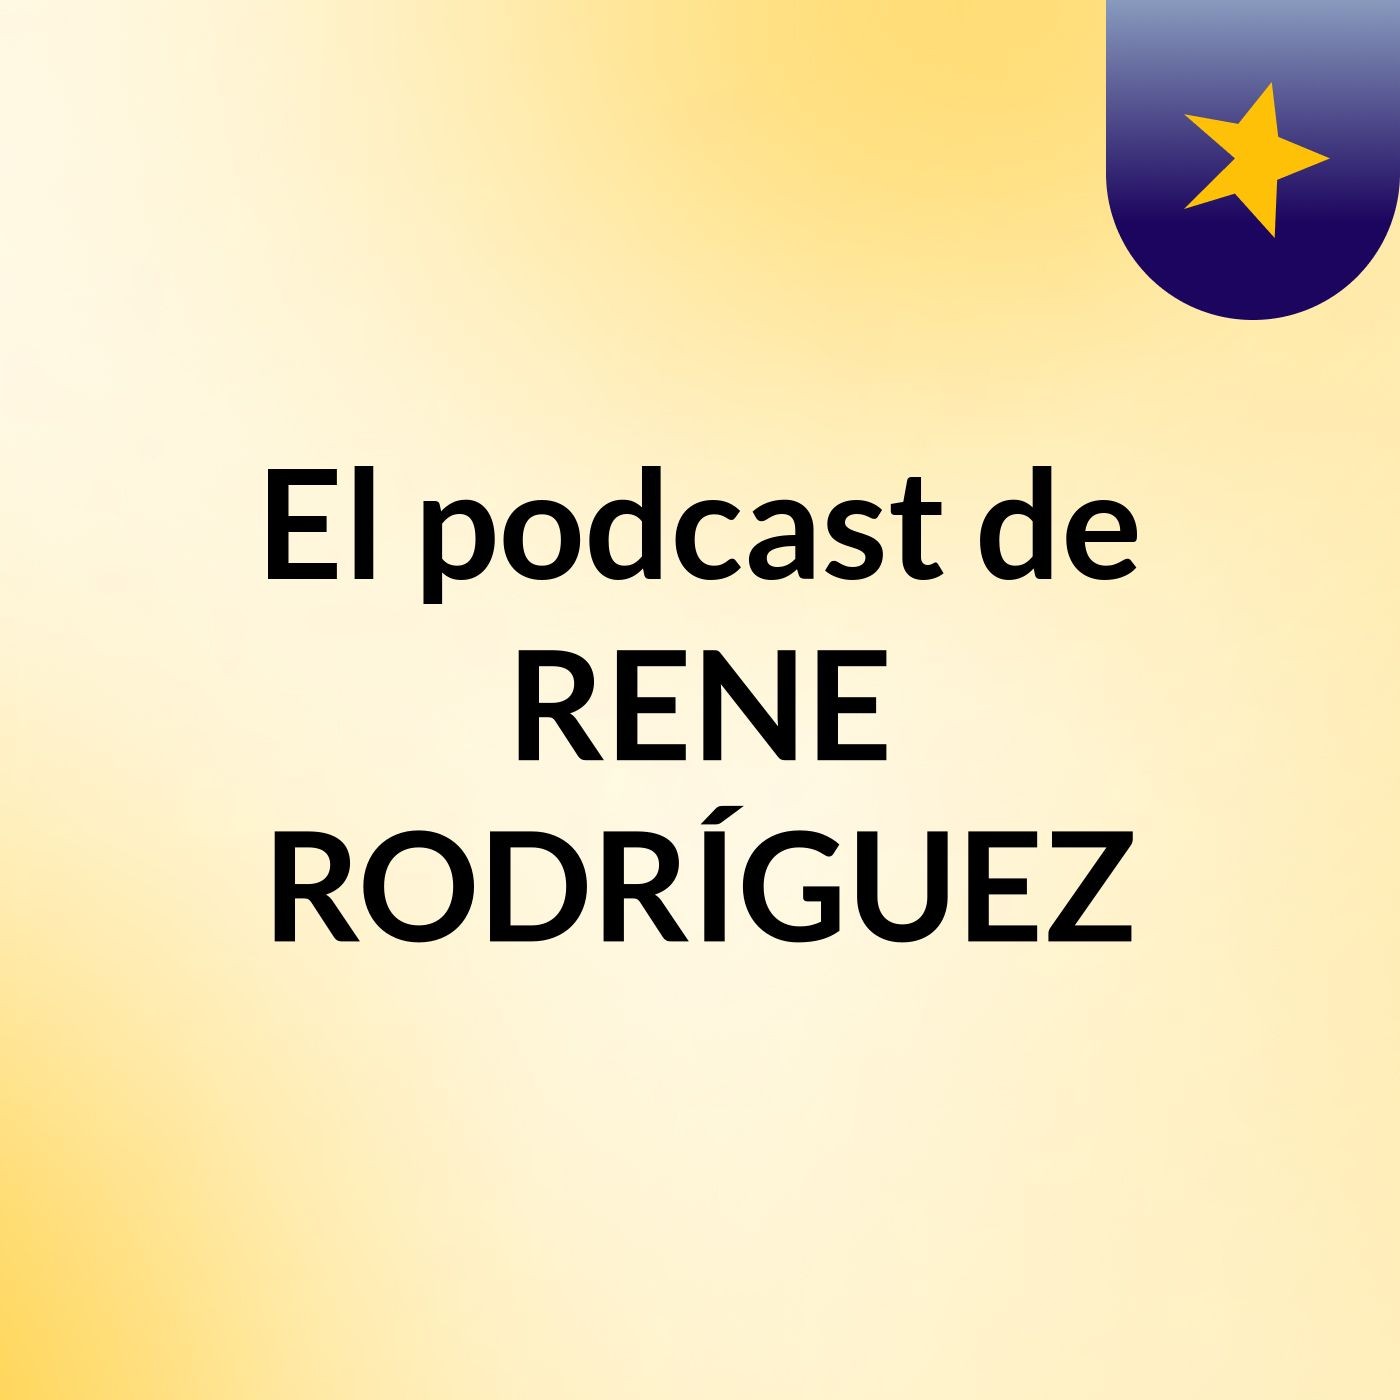 El podcast de RENE RODRÍGUEZ